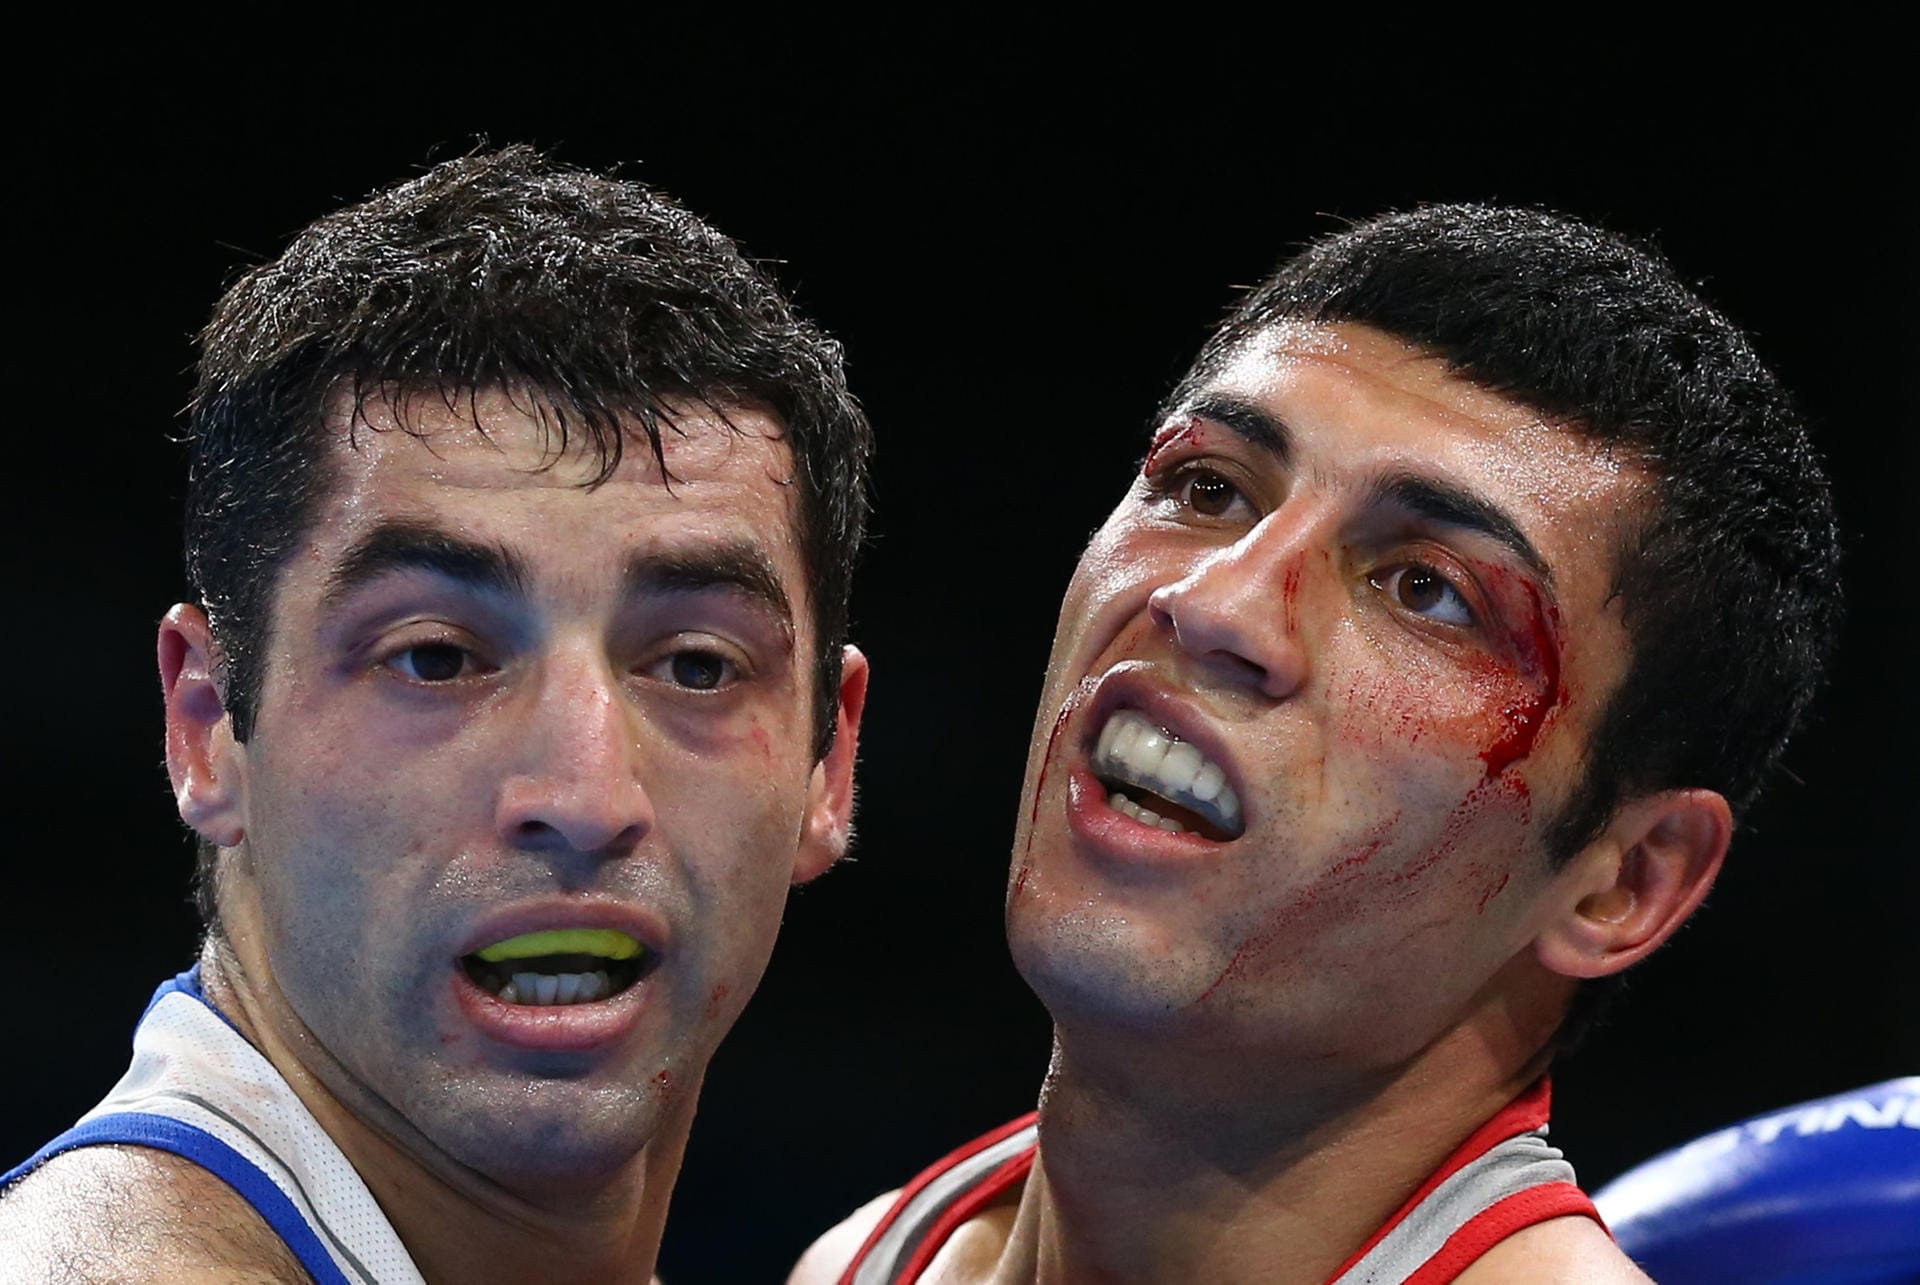 Blutig geht es im Box-Finale zwischen Shakhobidin Zoirov aus Usbekistan und dem Russen Misha Aloian zu.